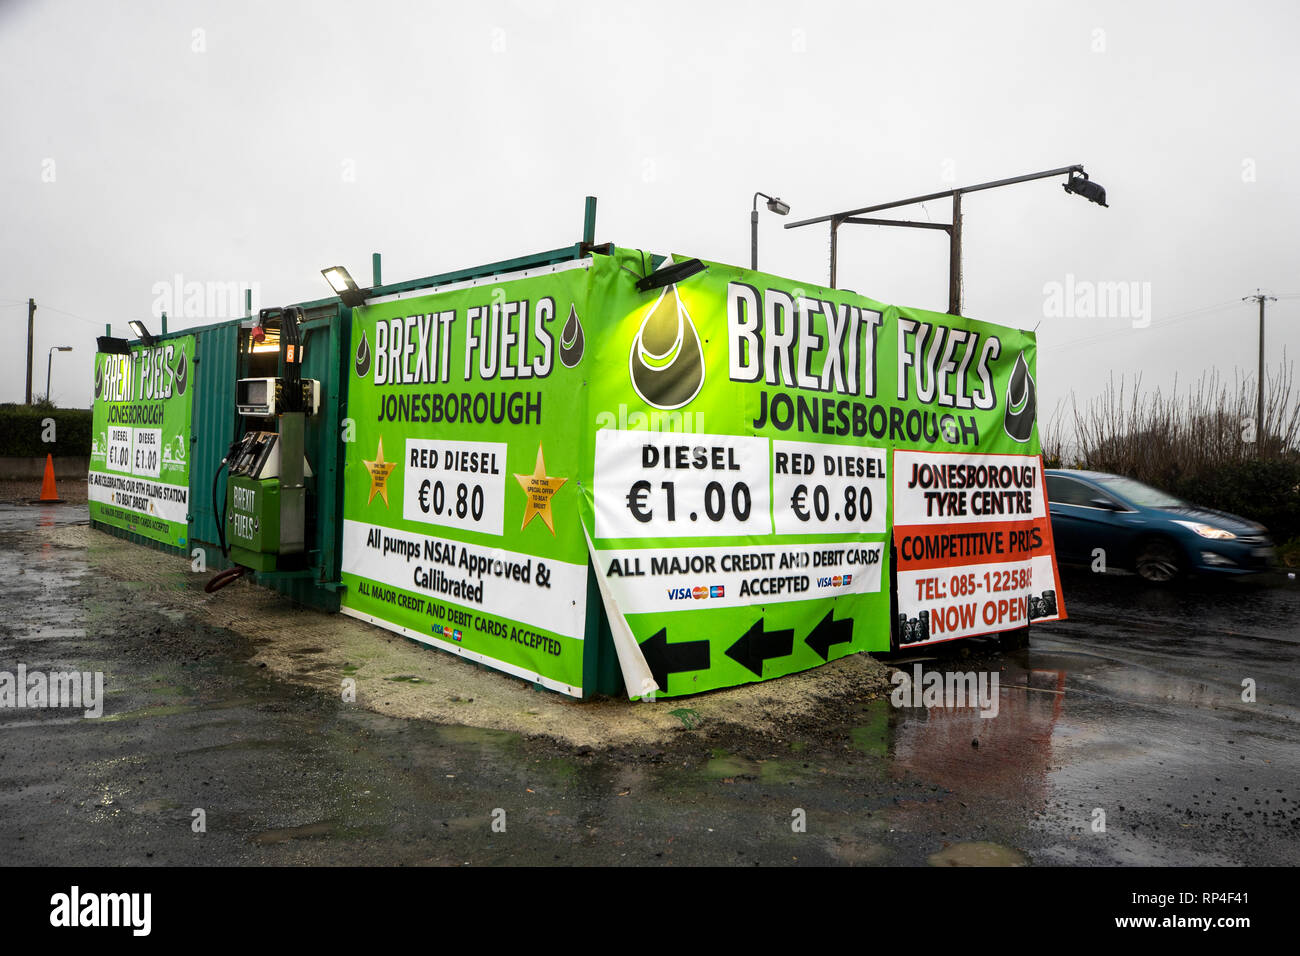 Una stazione di riempimento chiamato Brexit combustibili presso Jonesborough in.contea di Armagh, Irlanda del Nord, vicino alla frontiera con la Repubblica di Irlanda. Continua il dibattito tra il governo del Regno Unito e dell'UE oltre il controverso il fermo sul confine, che permetterebbe di tenere una frontiera aperta sull'isola di Irlanda nel caso che il Regno Unito lascia la UE, indipendentemente dal risultato dei negoziati sulle loro relazioni future. Foto Stock